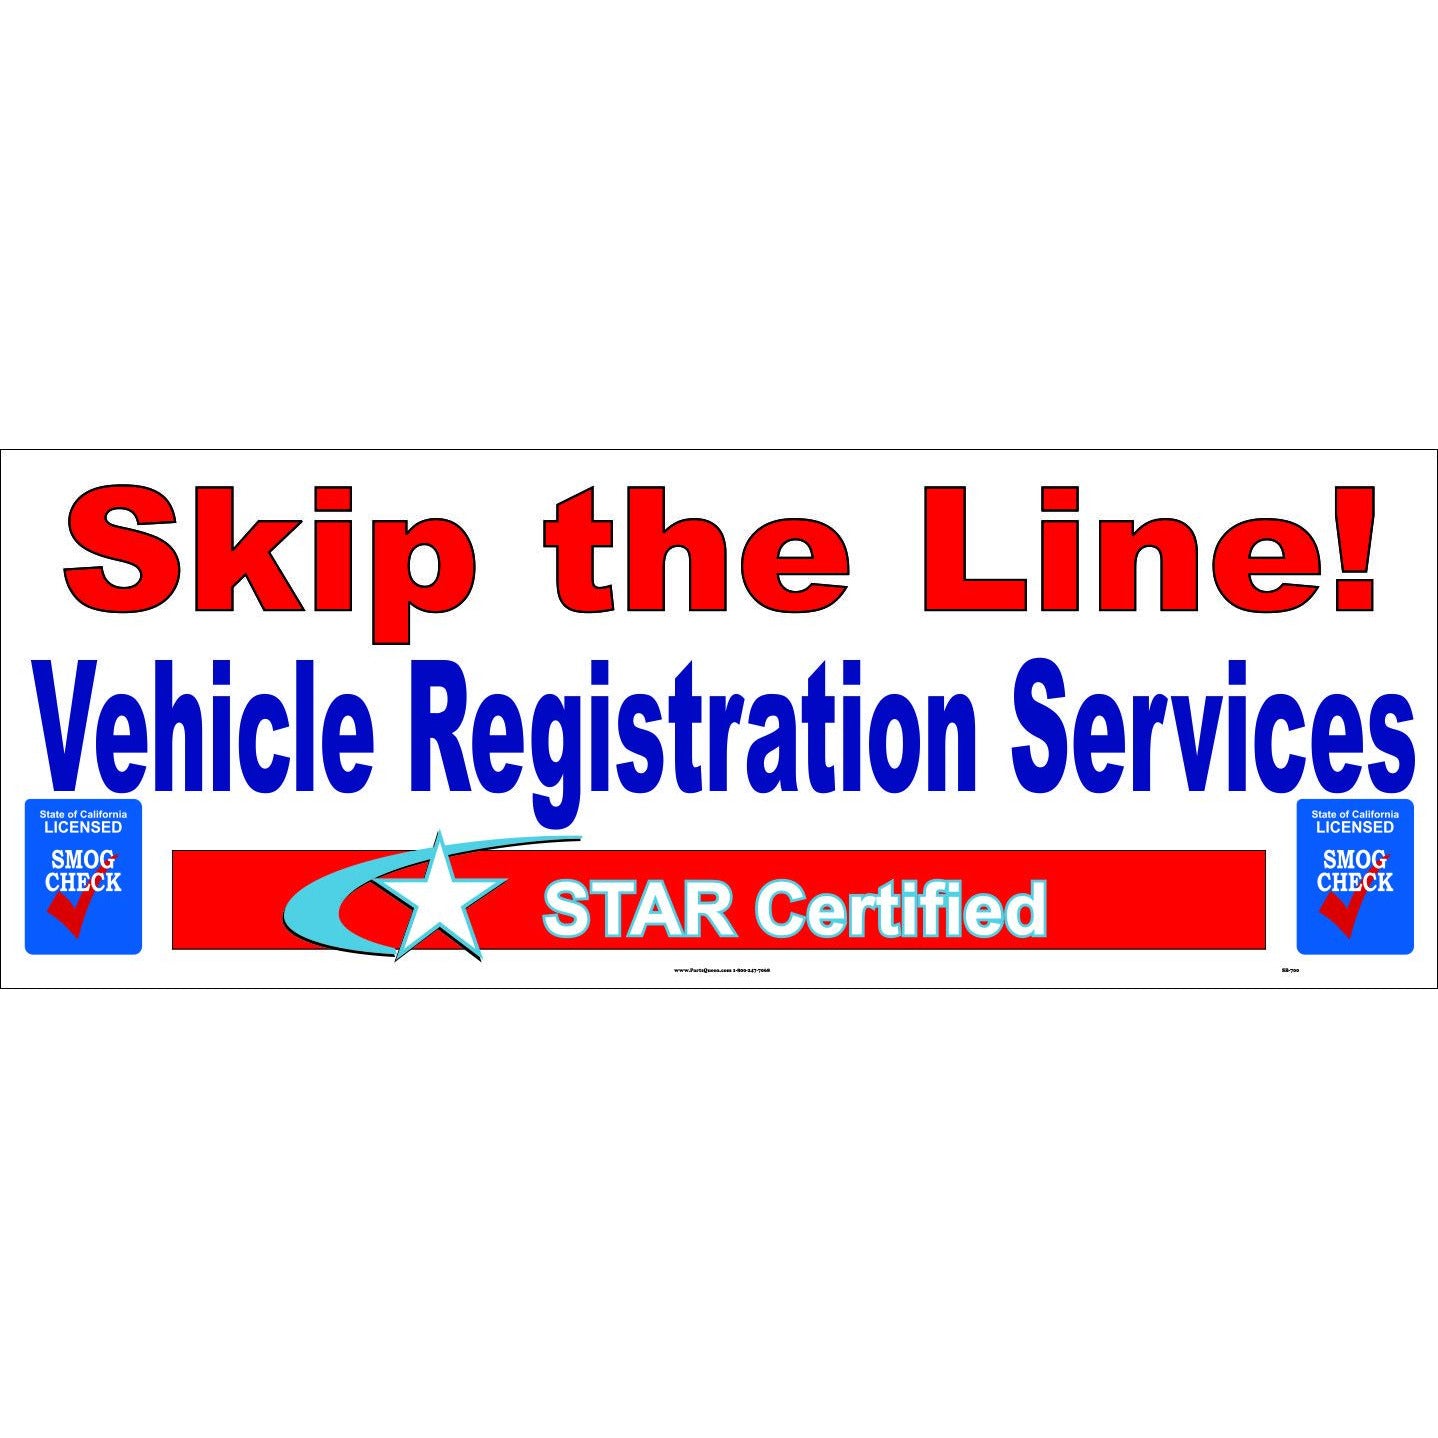 SB-700 "SKIP THE LINE" VEHICLE REGISTRATION SERVICES BANNER !!!